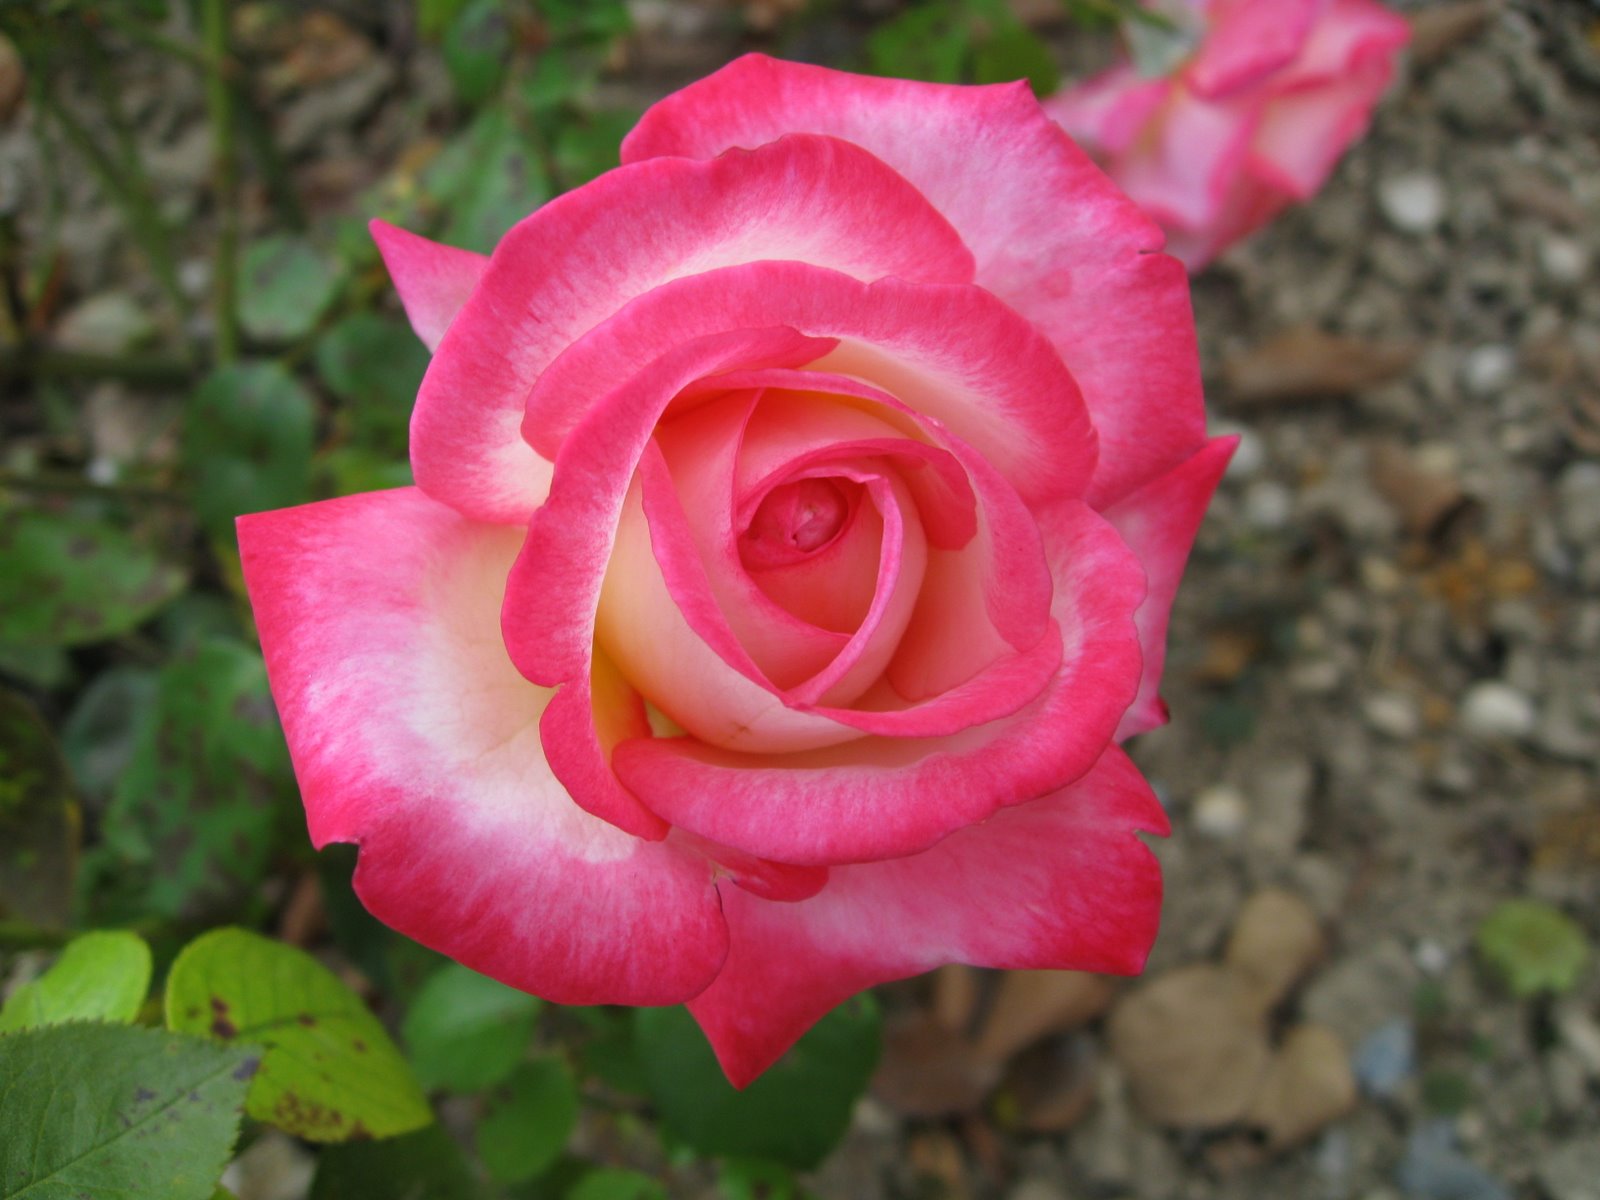 schönsten rosentapeten,blume,blühende pflanze,julia kind stand auf,gartenrosen,blütenblatt